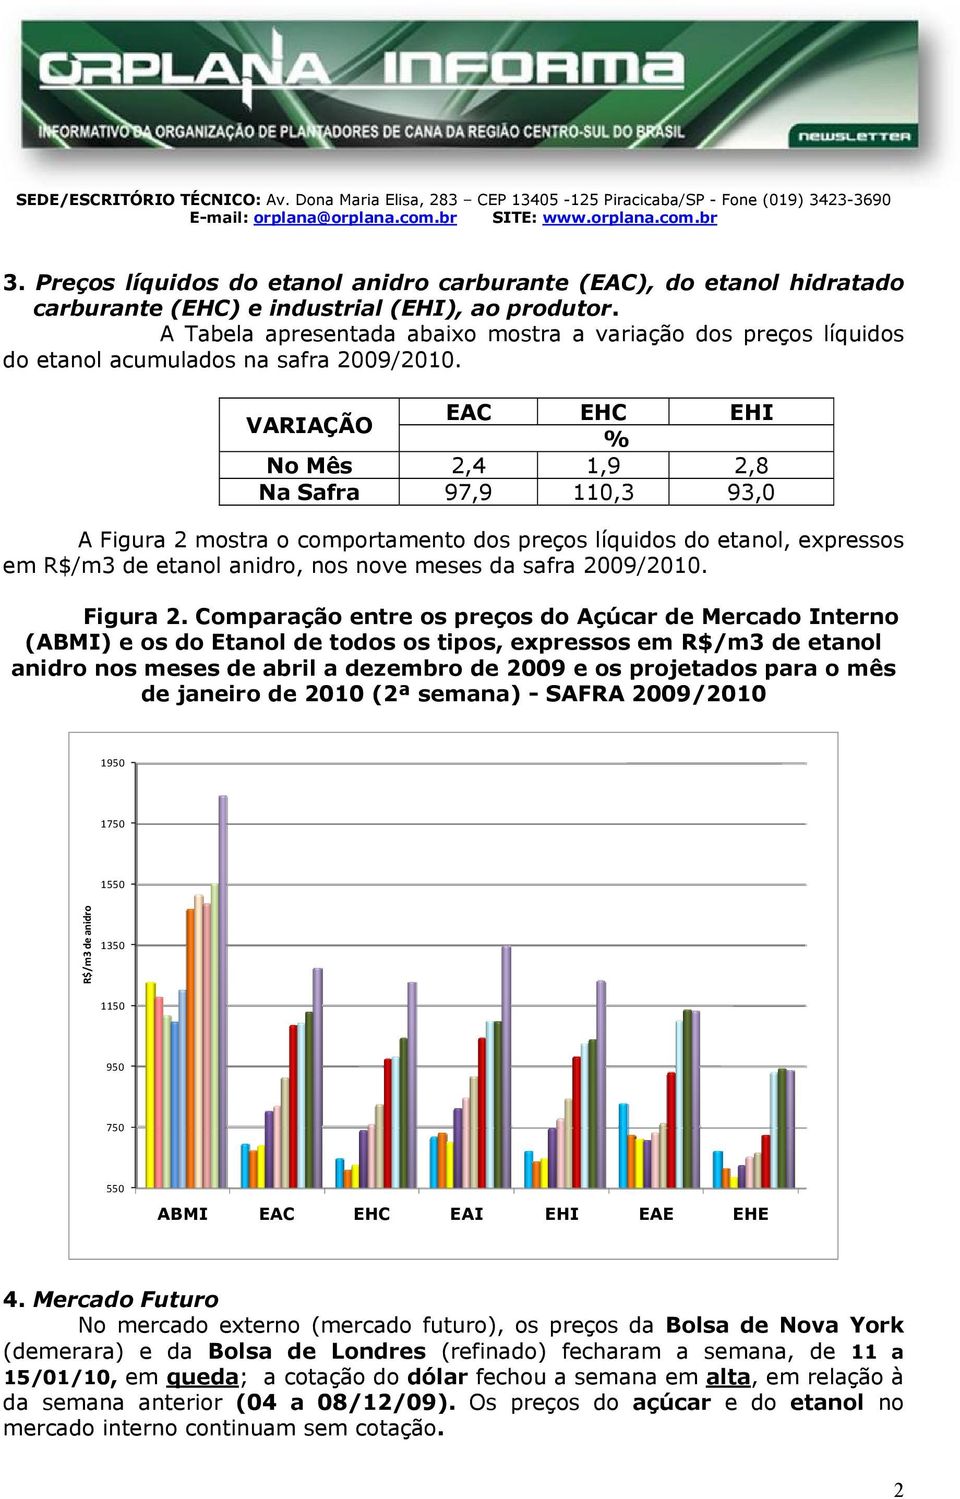 abela apresentada abaixo mostra a variação dos preços líquidos do etanol acumulados na safra 2009/2010.